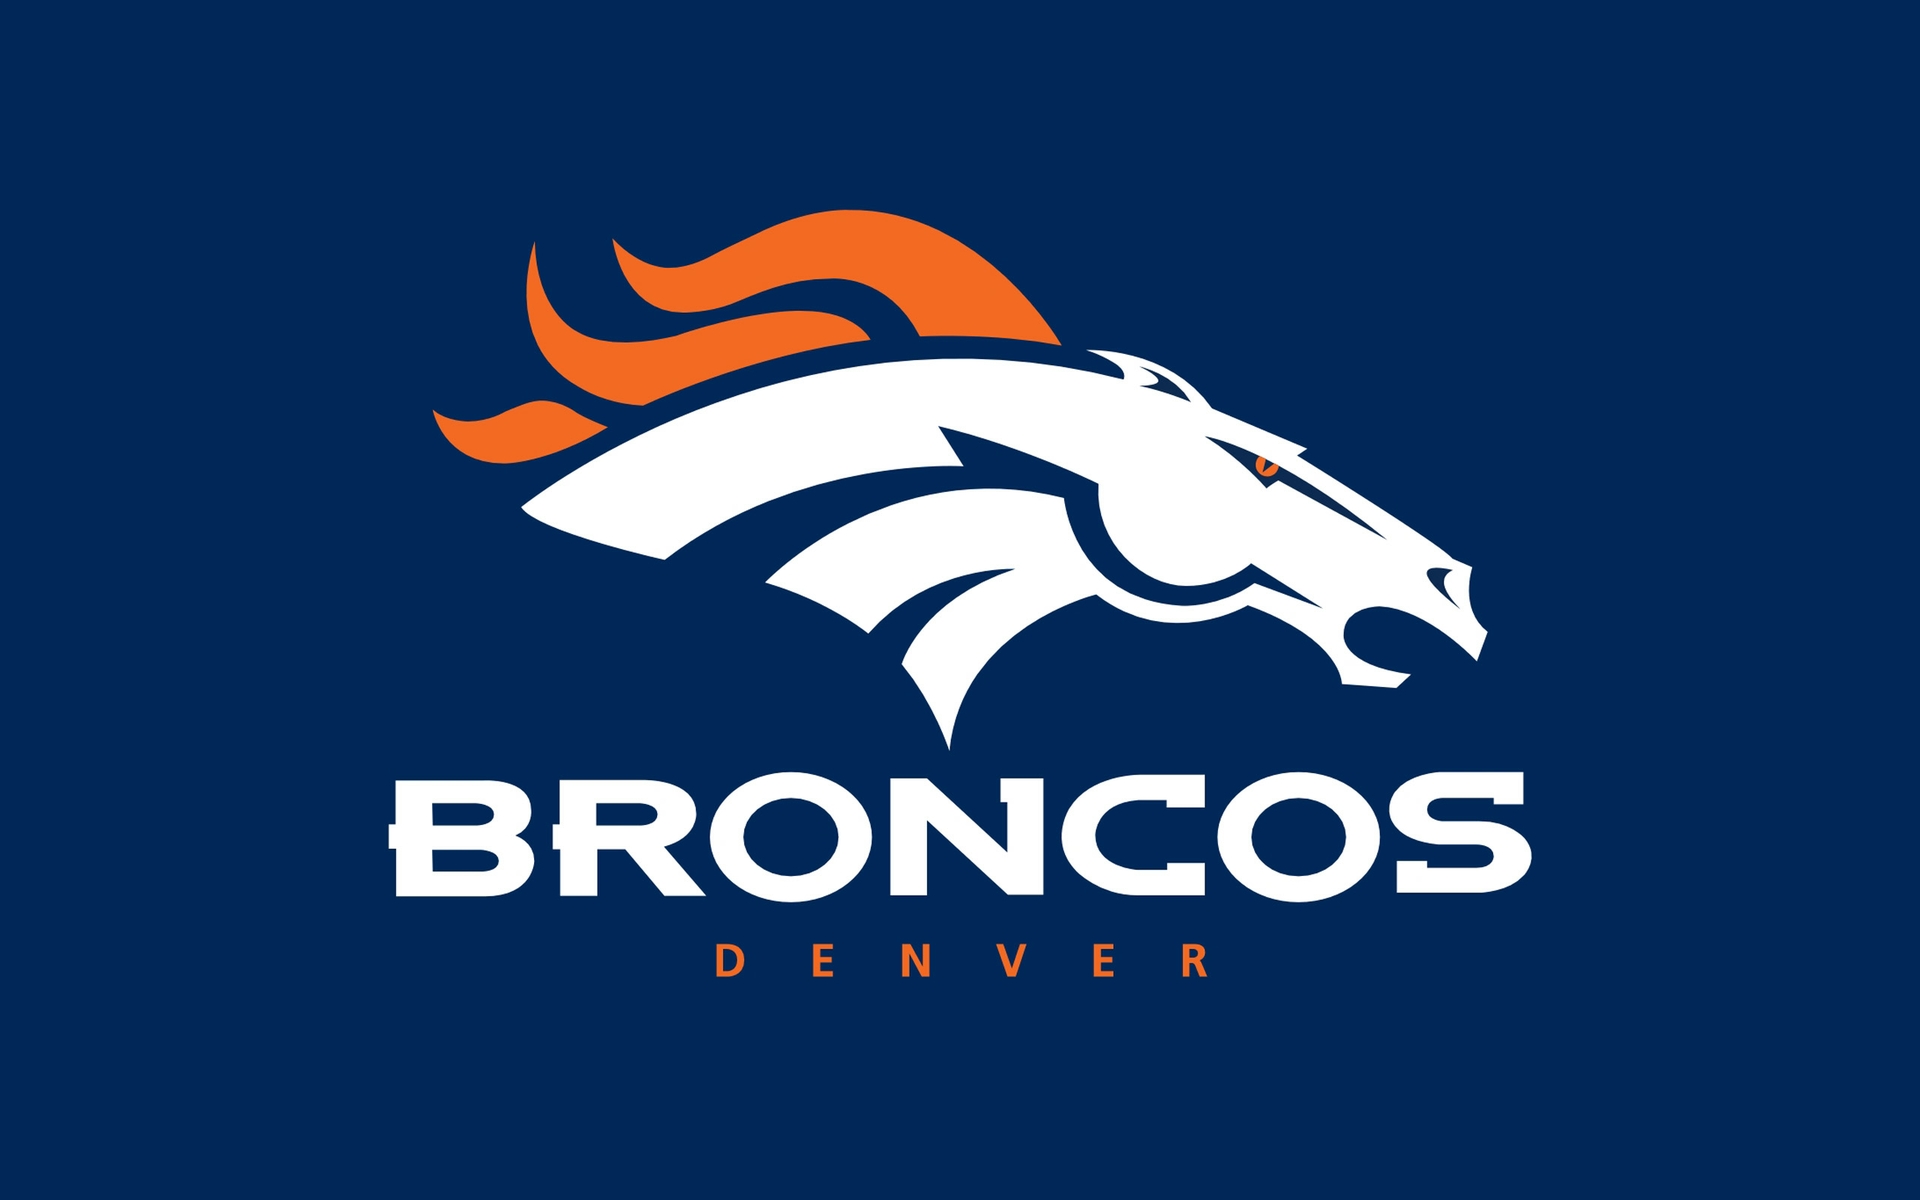 Denver Broncos Nfl 1920x1200 Wide Images last added page